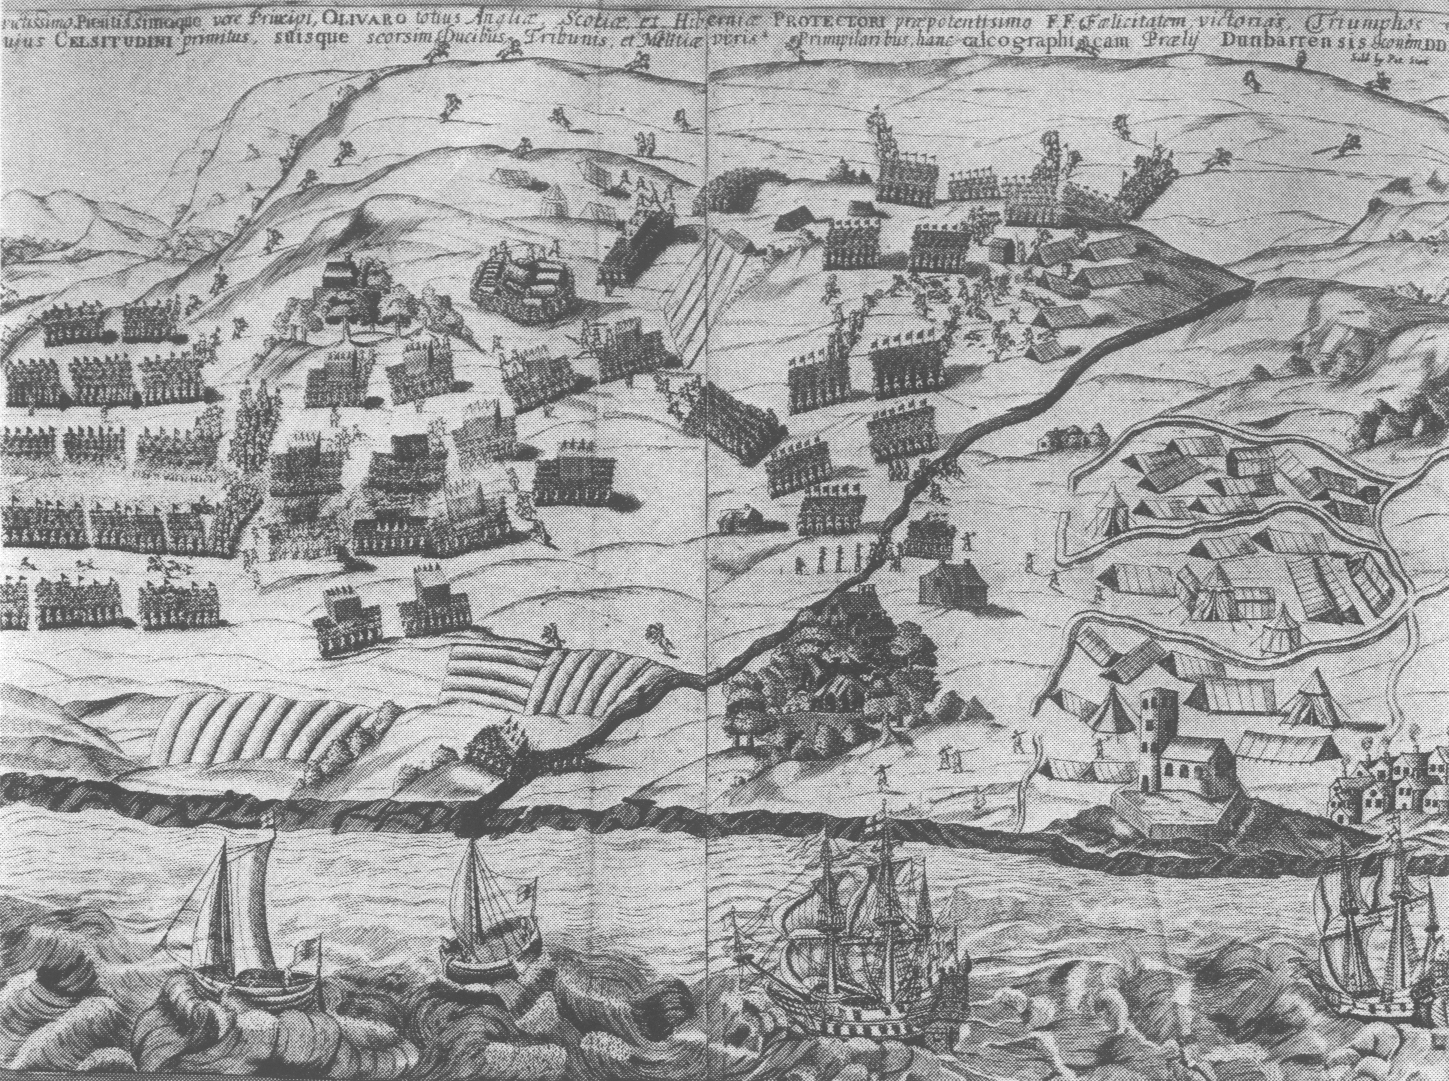 The  Second Battle of Dunbar